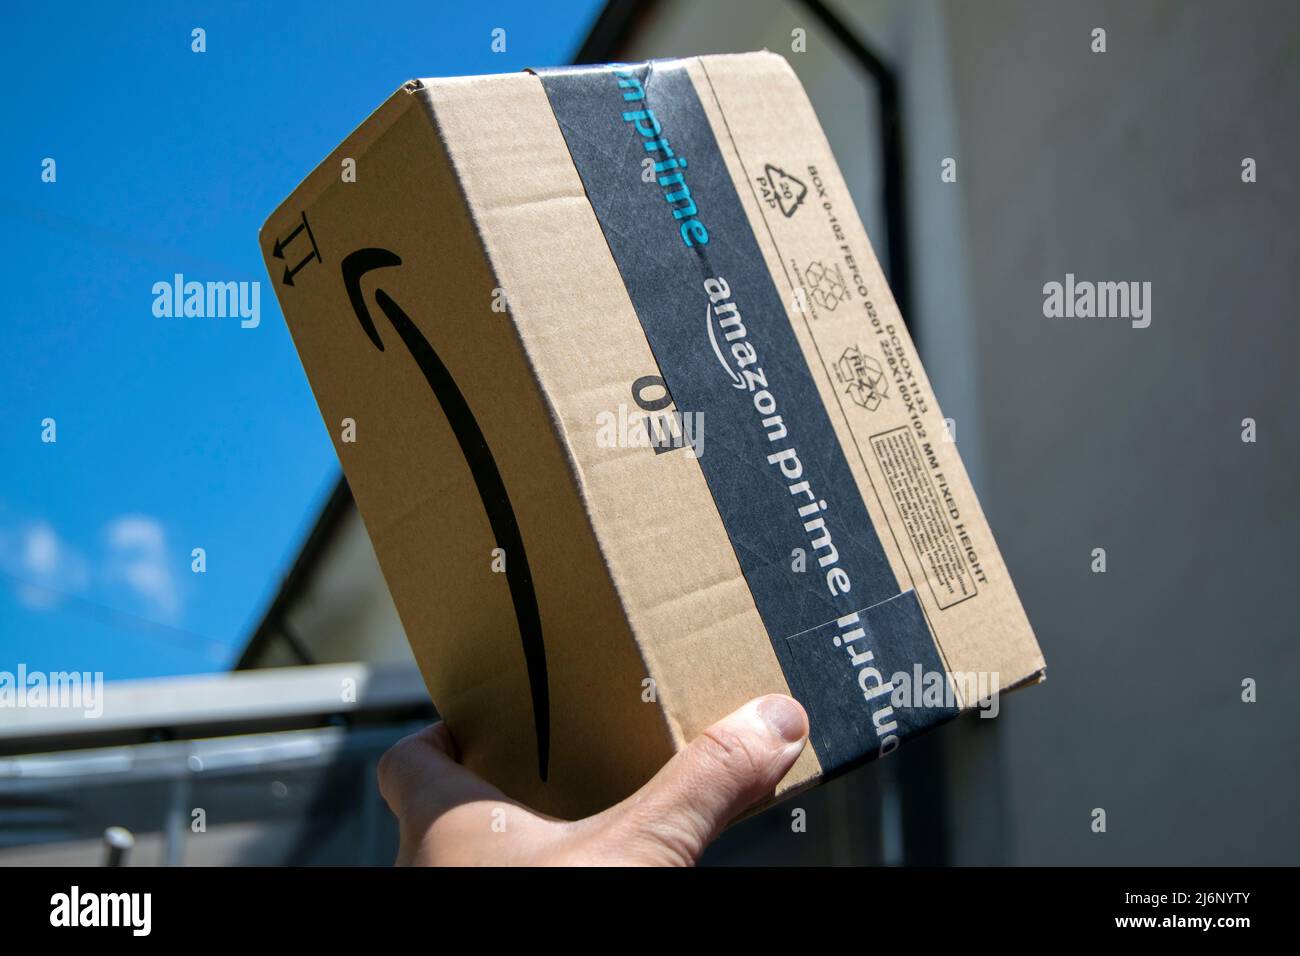 Amazon Prime schneller und erstklassiger Lieferservice. Amazon prime-Paket, Online-E-Commerce schnell und sicher. Lieferung Junge mit Amazon-Paket. Stockfoto